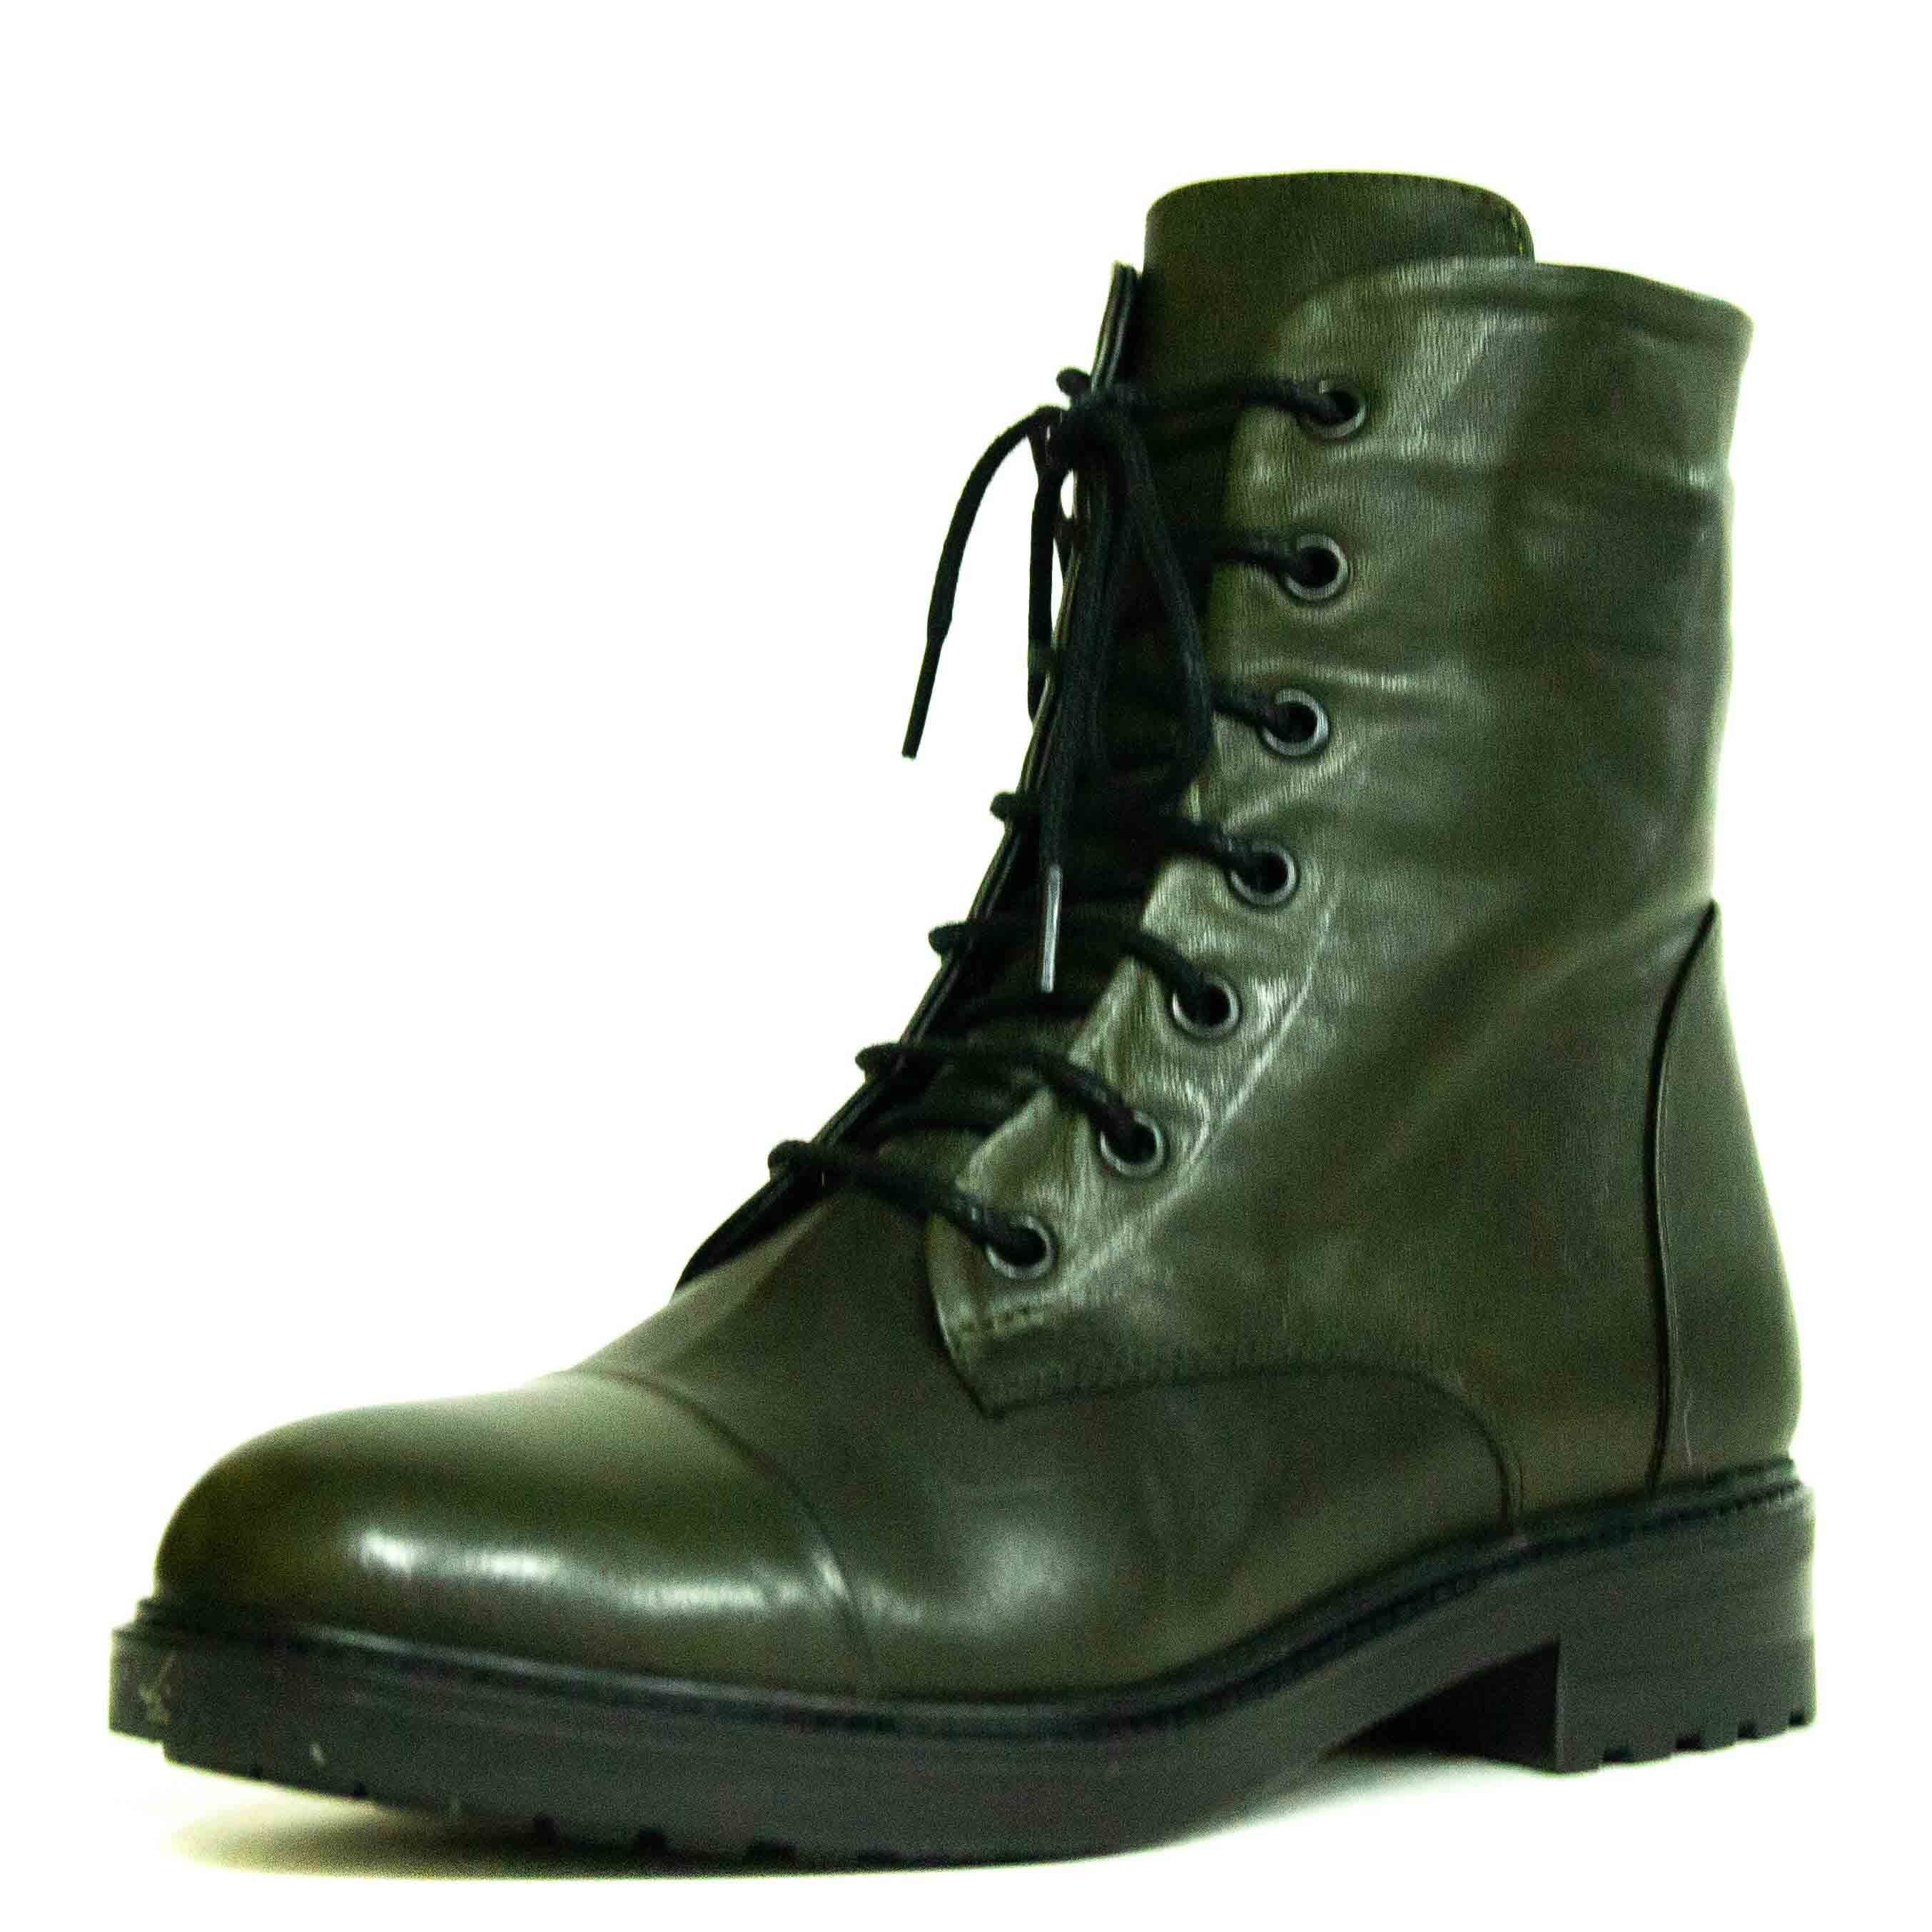 Ботинки женские Shoes Market 433-706-89 зеленые 37 RU